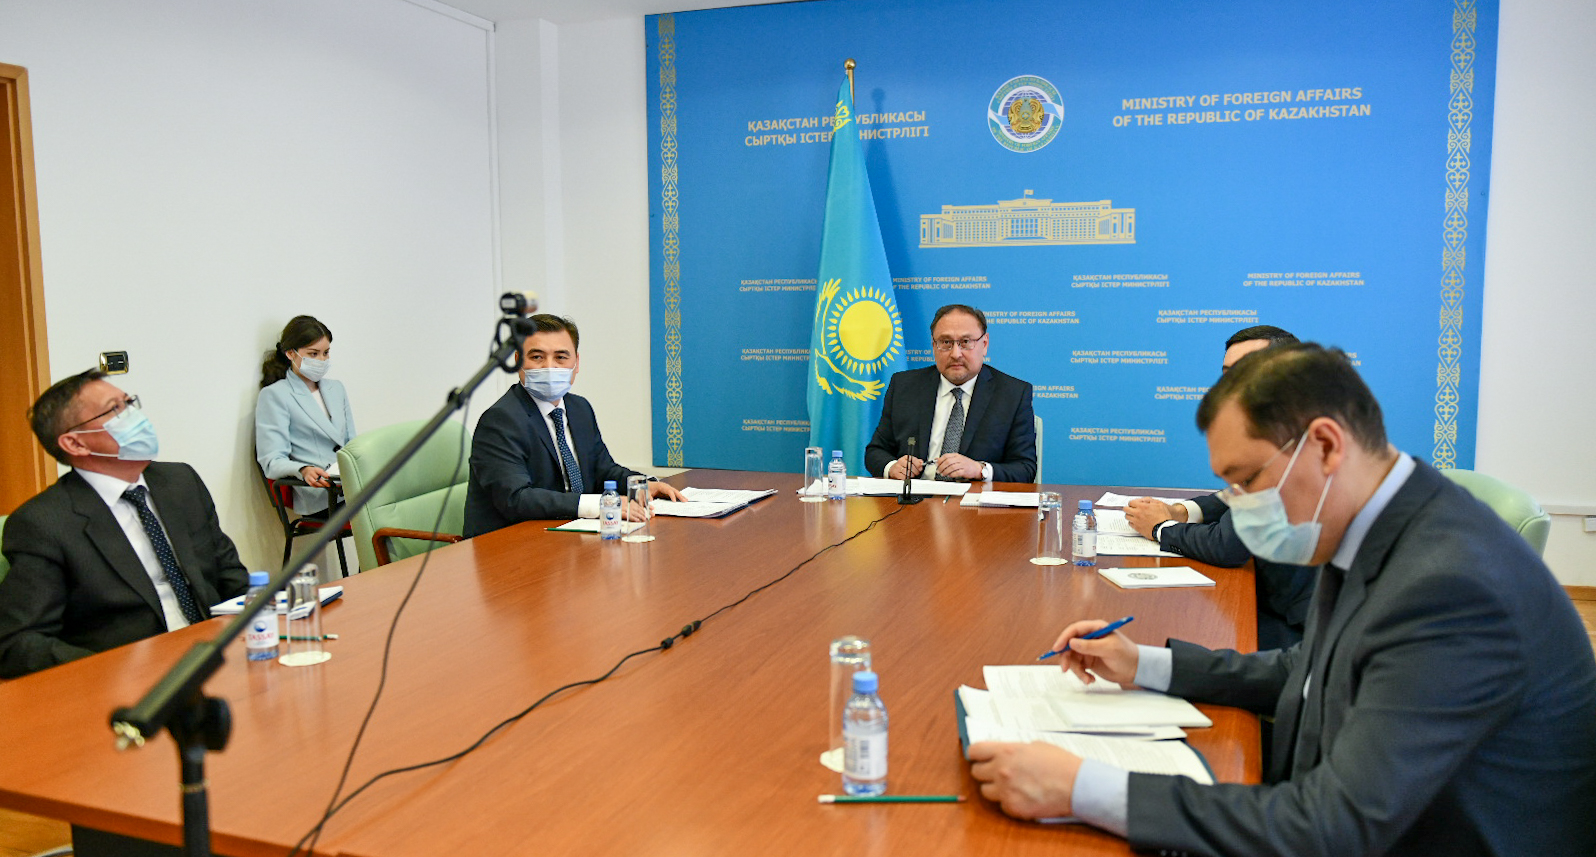 Перспективы казахстанско-американского сотрудничества обсудили представители внешнеполитических ведомств двух стран